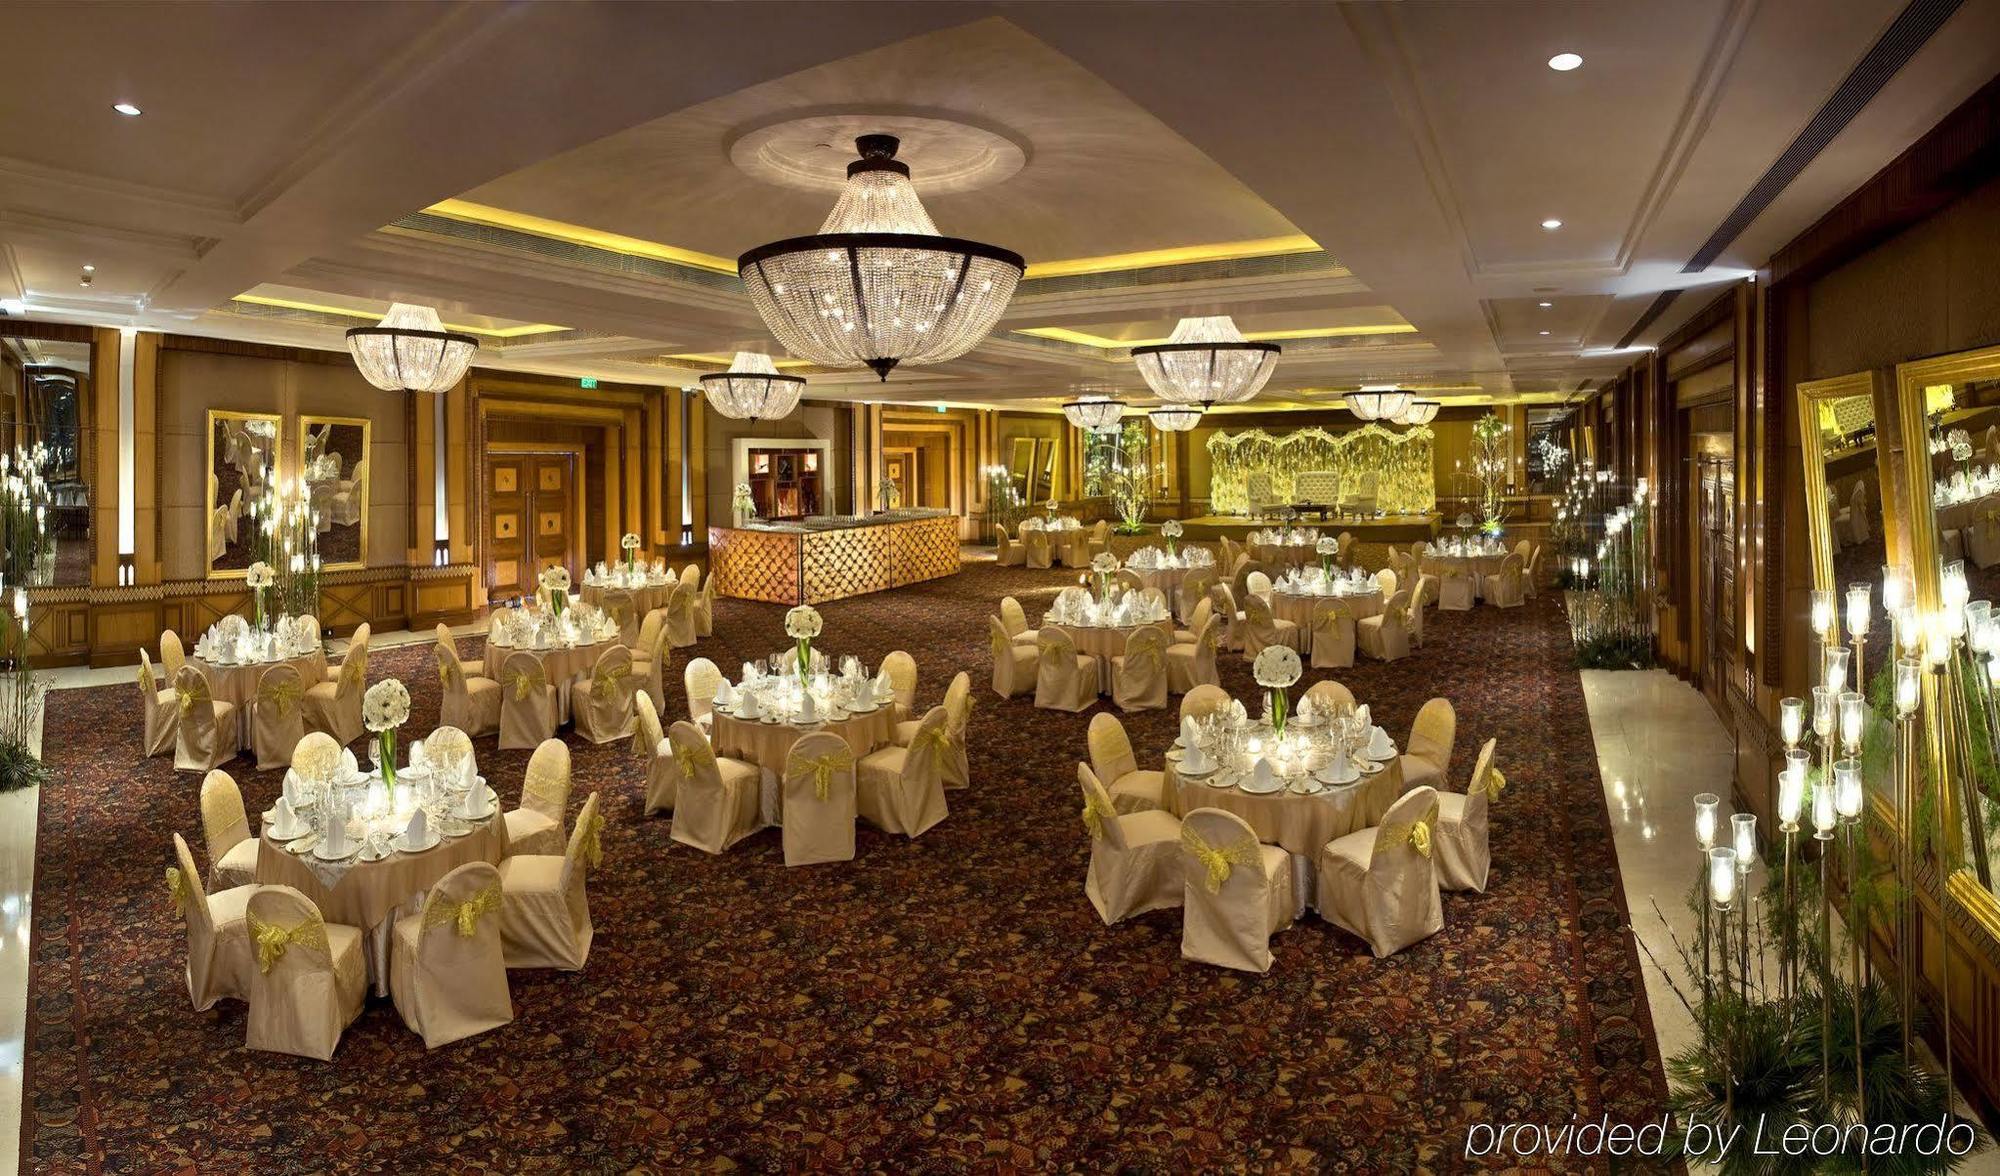 Radisson Blu Mbd Hotel Noida Restauracja zdjęcie